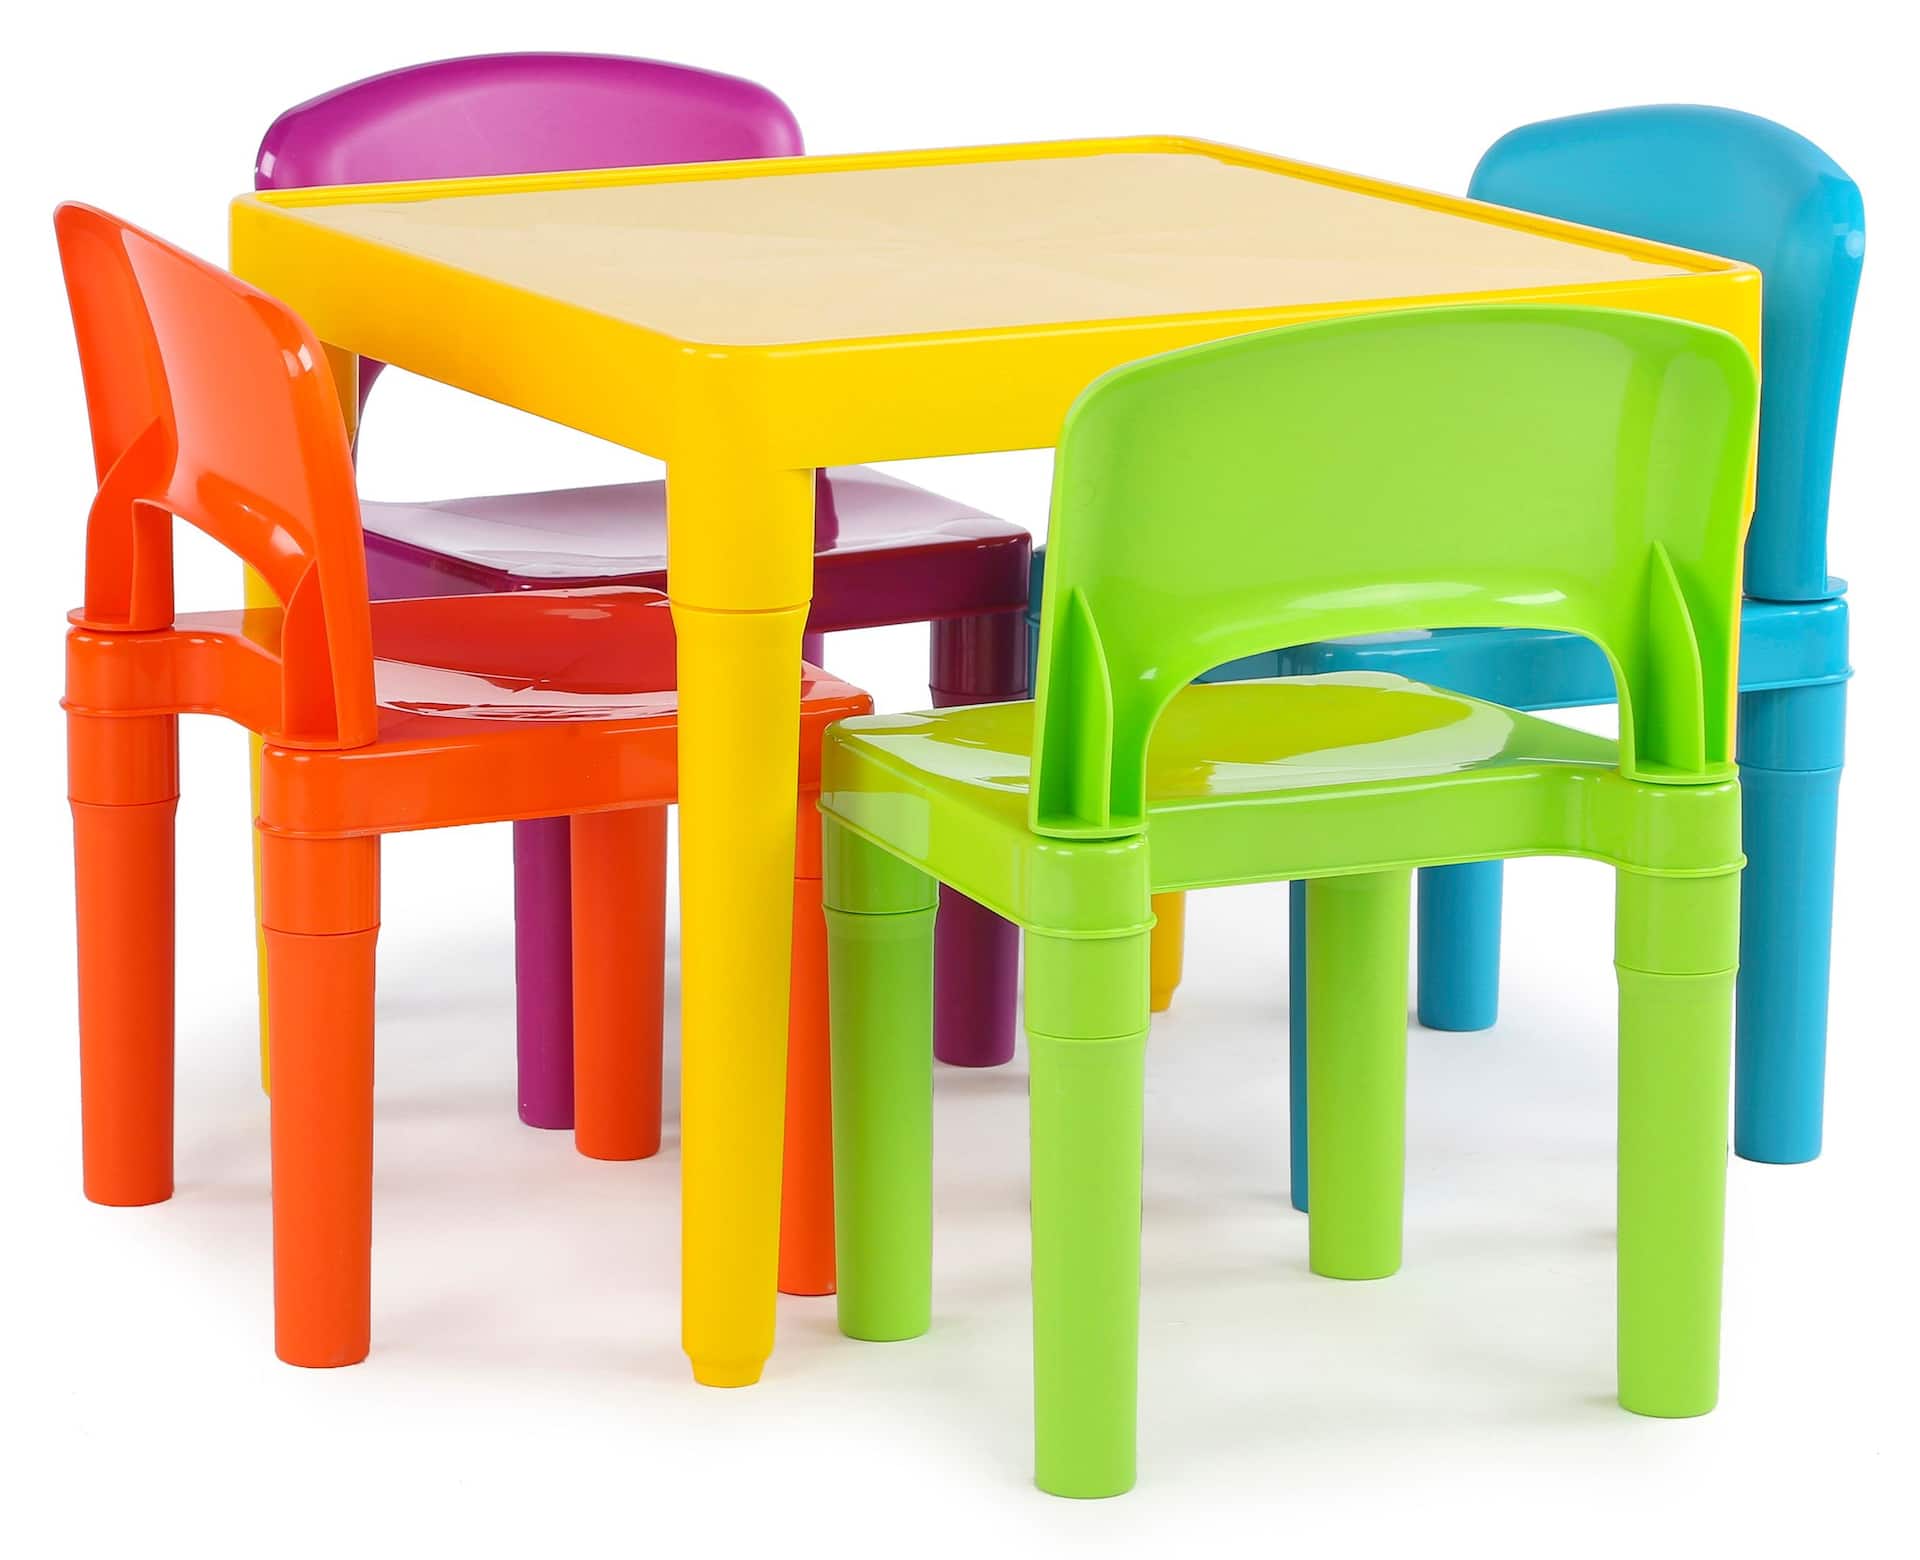 Chaise en plastique - pour jardin/extérieur - pour enfant - vert